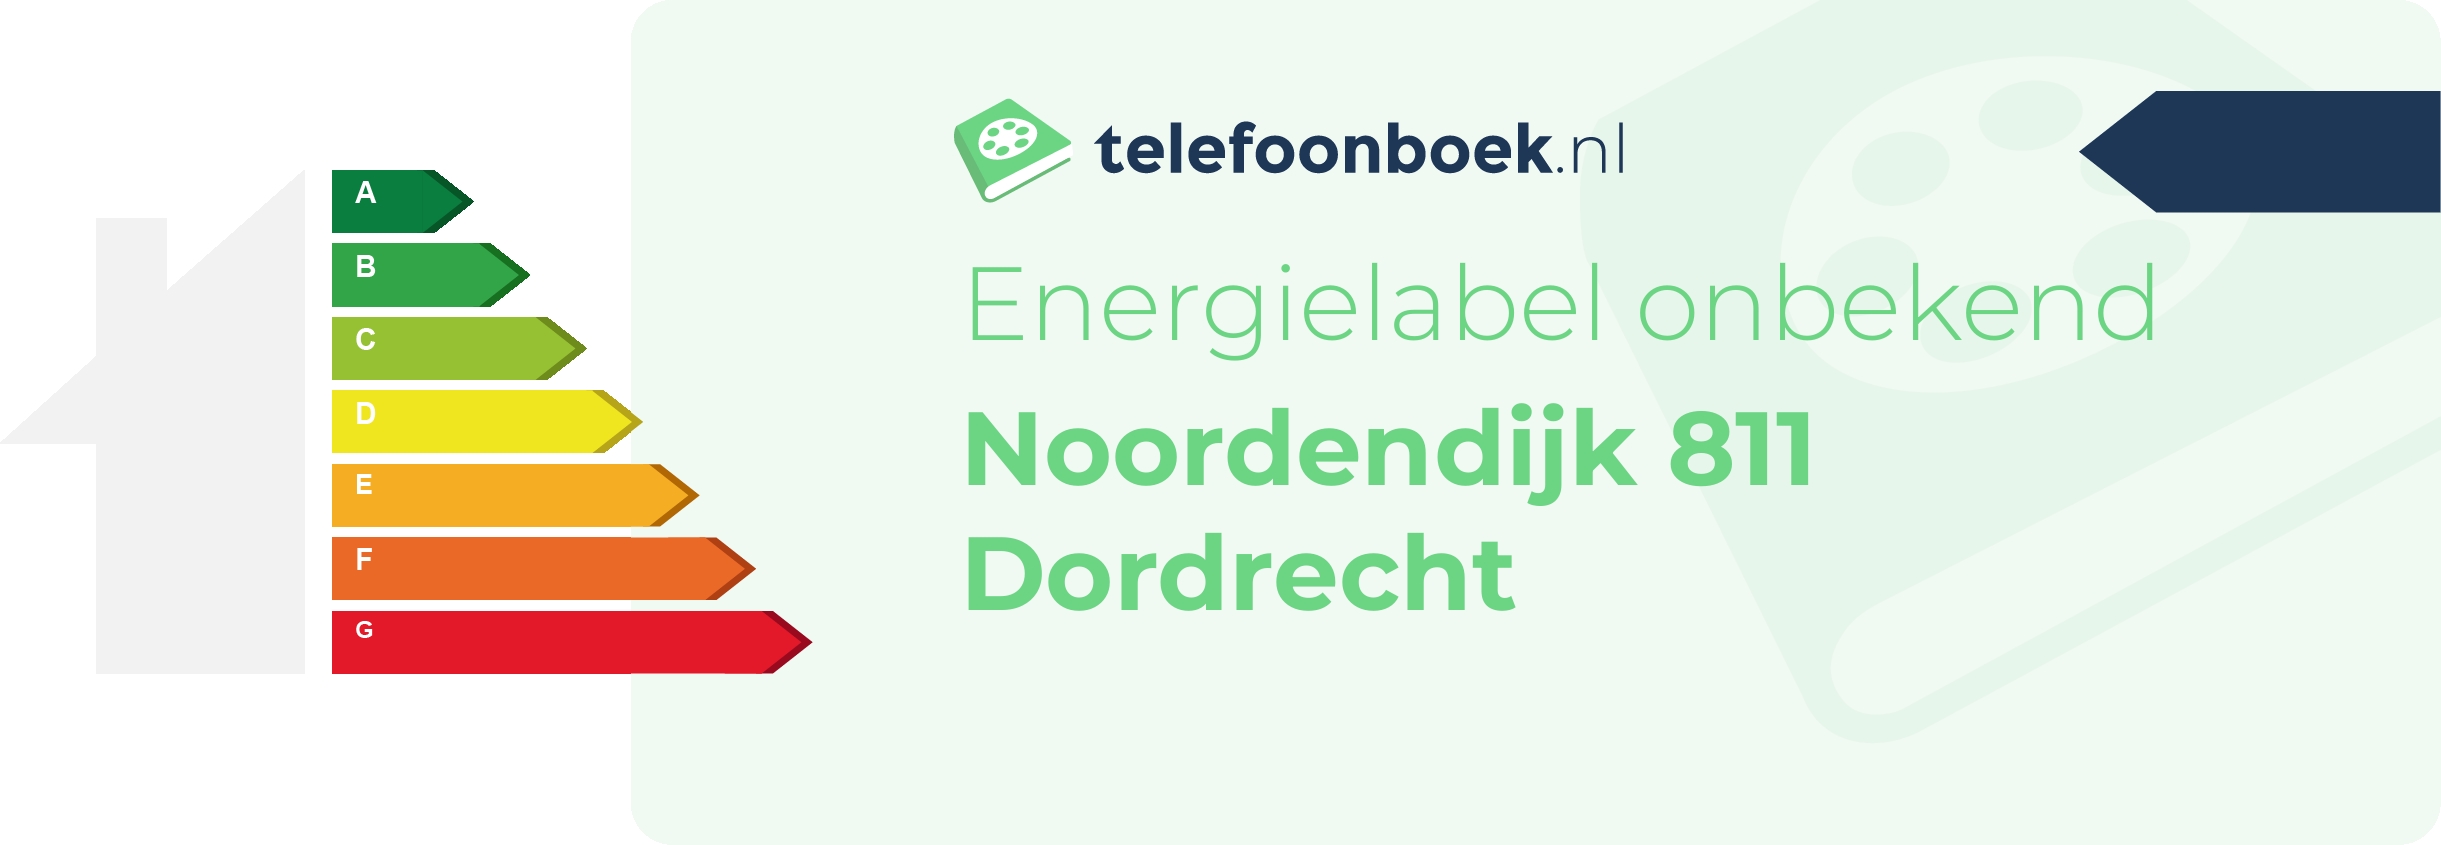 Energielabel Noordendijk 811 Dordrecht